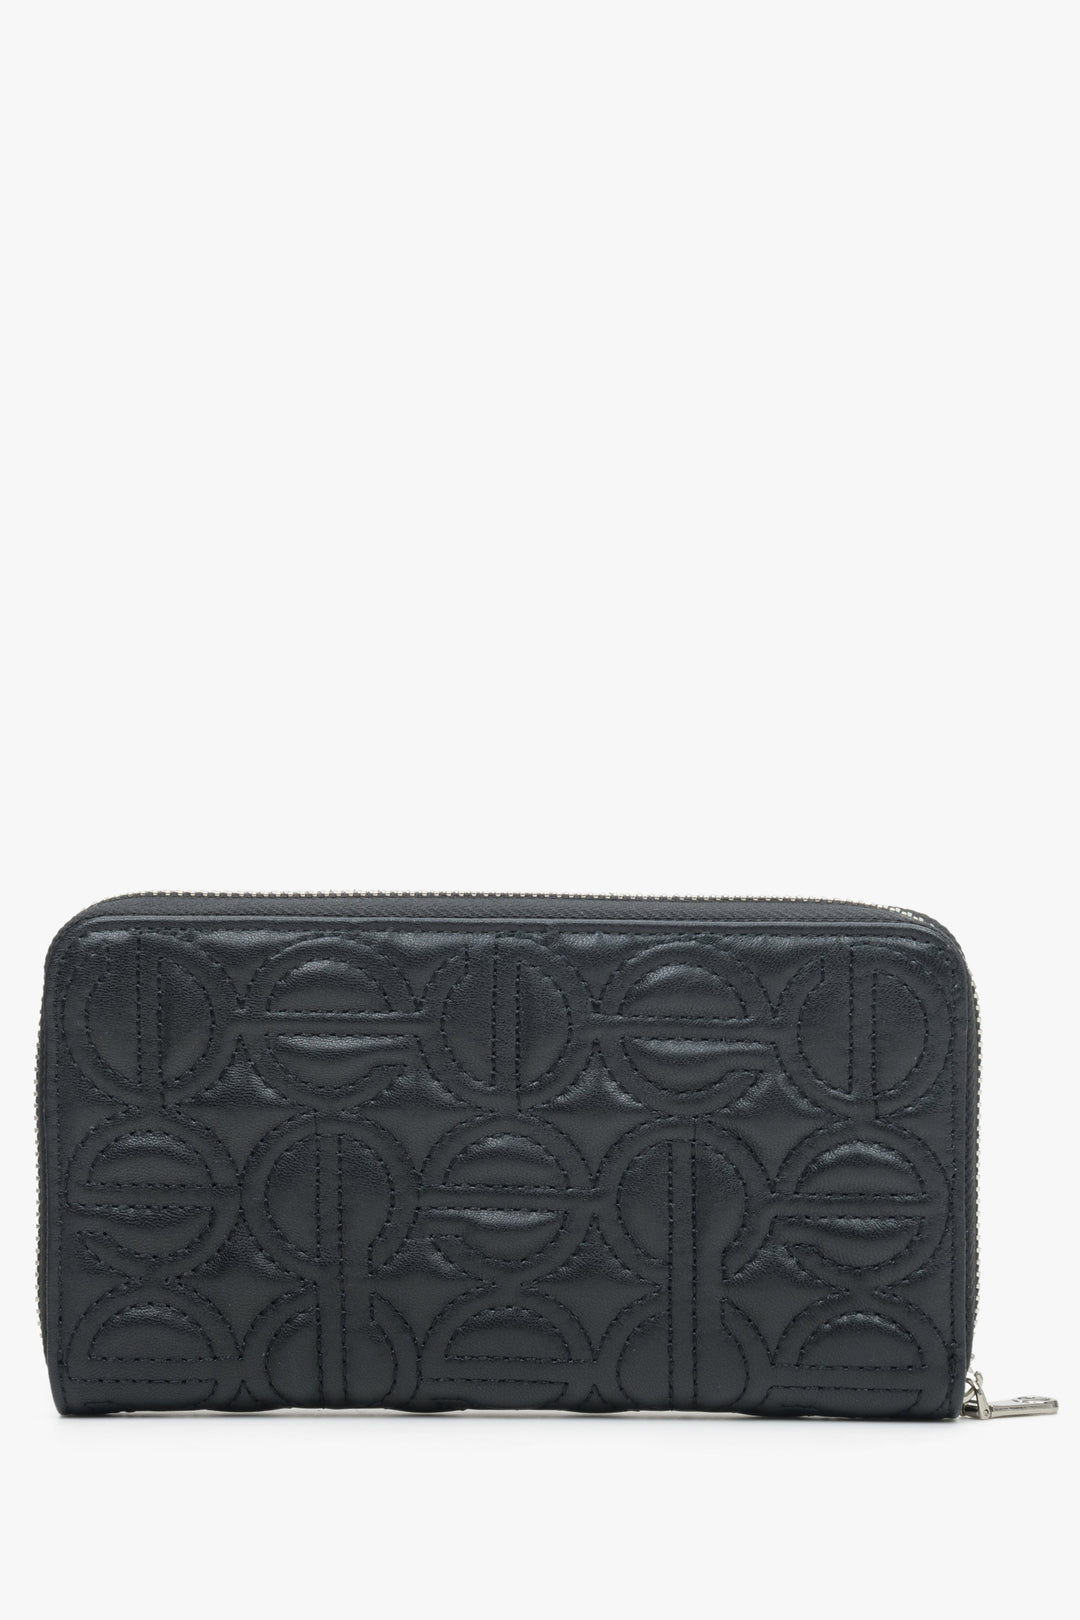 Czarny, skórzany portfel damski z tłoczonym logo marki Estro.